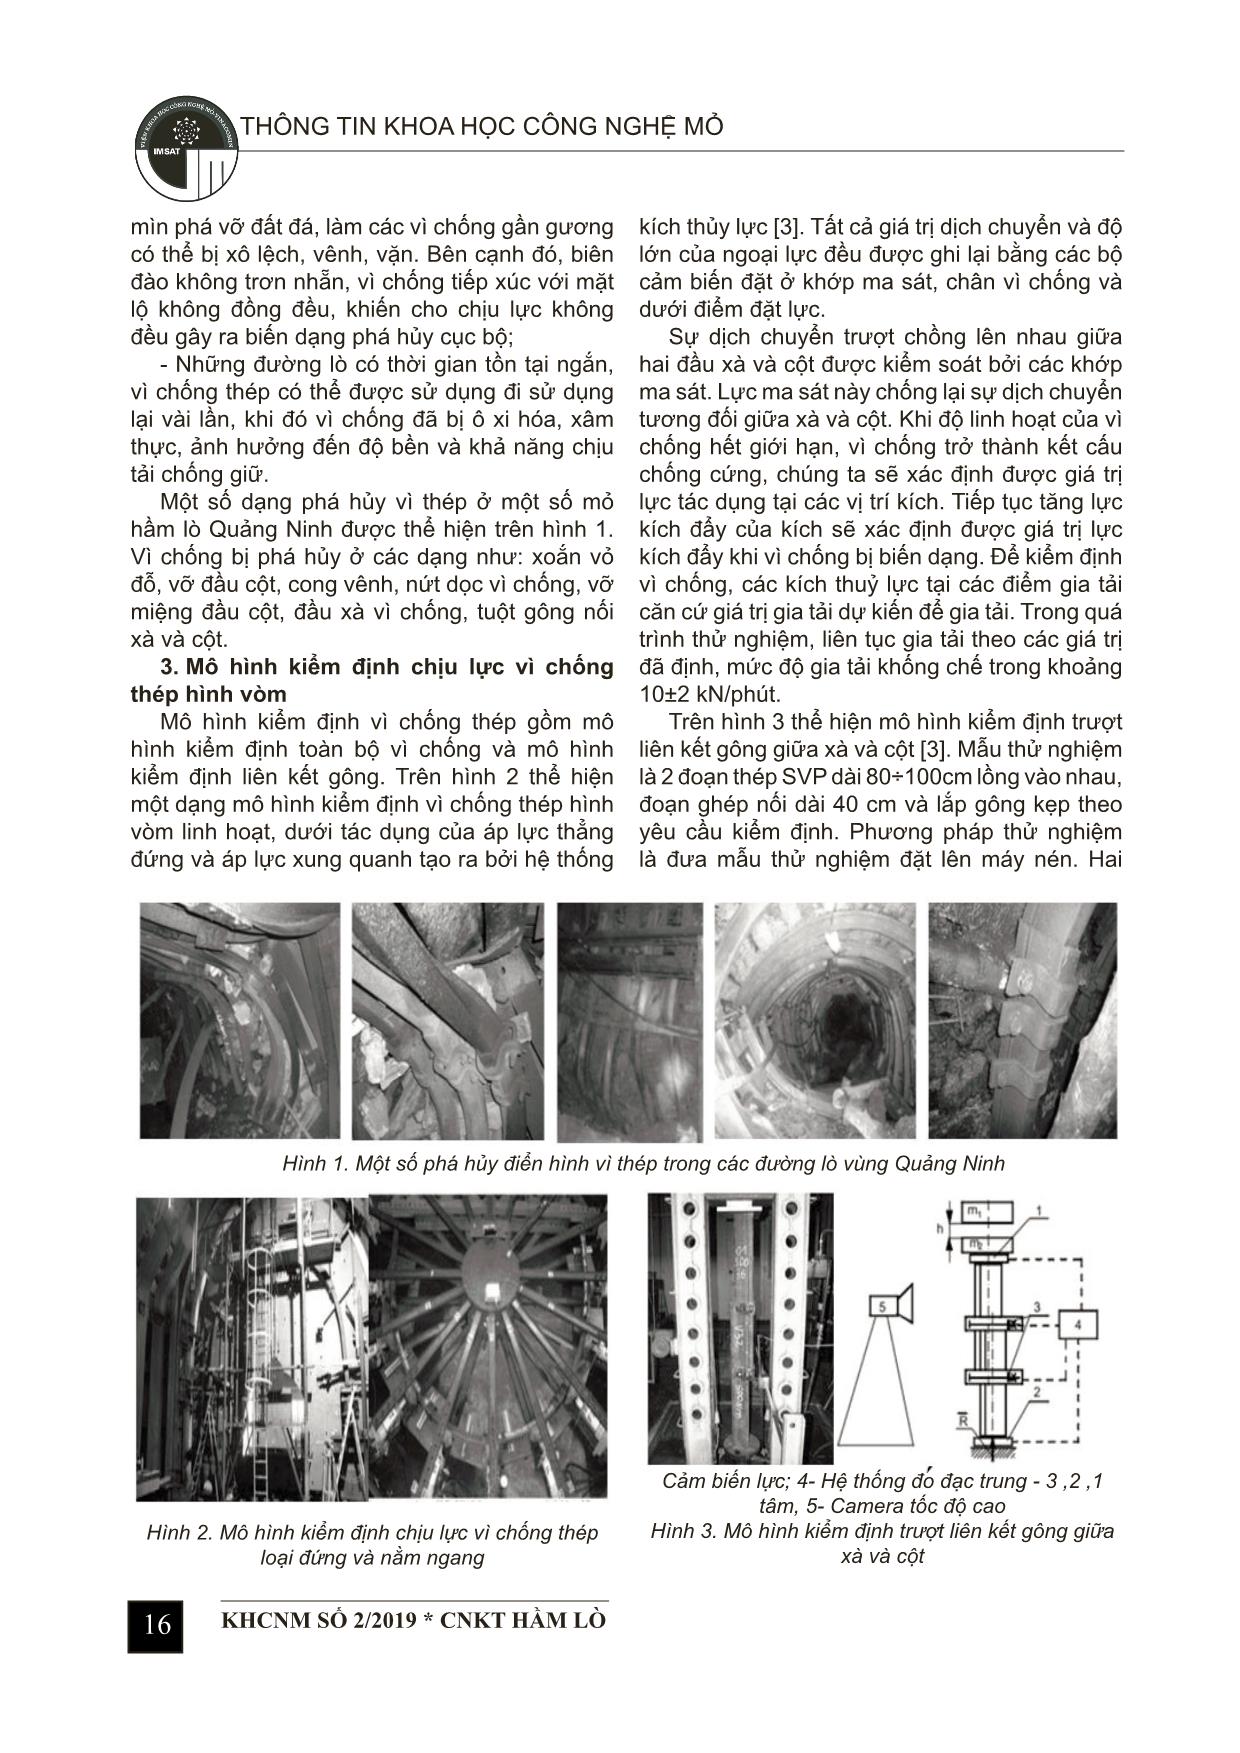 Xây dựng nội dung quy trình kiểm định vì chống thép linh hoạt áp dụng trong các mỏ than hầm lò vùng Quảng Ninh trang 2